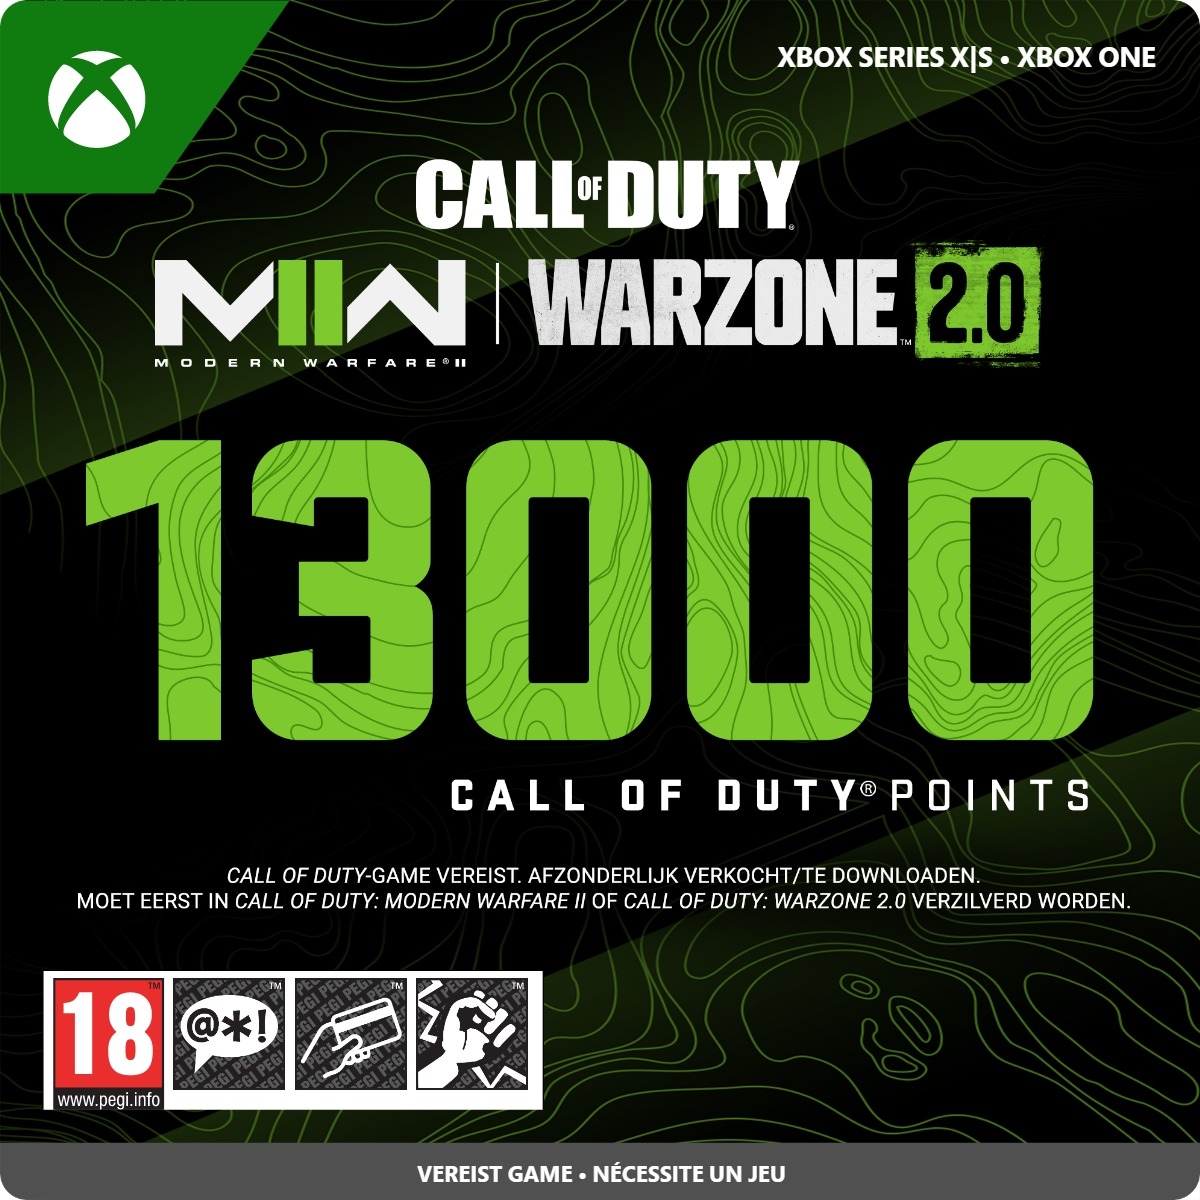 13.000 Xbox Call of Duty Points (Direct Digitaal Geleverd) XboxLiveKaarten.nl